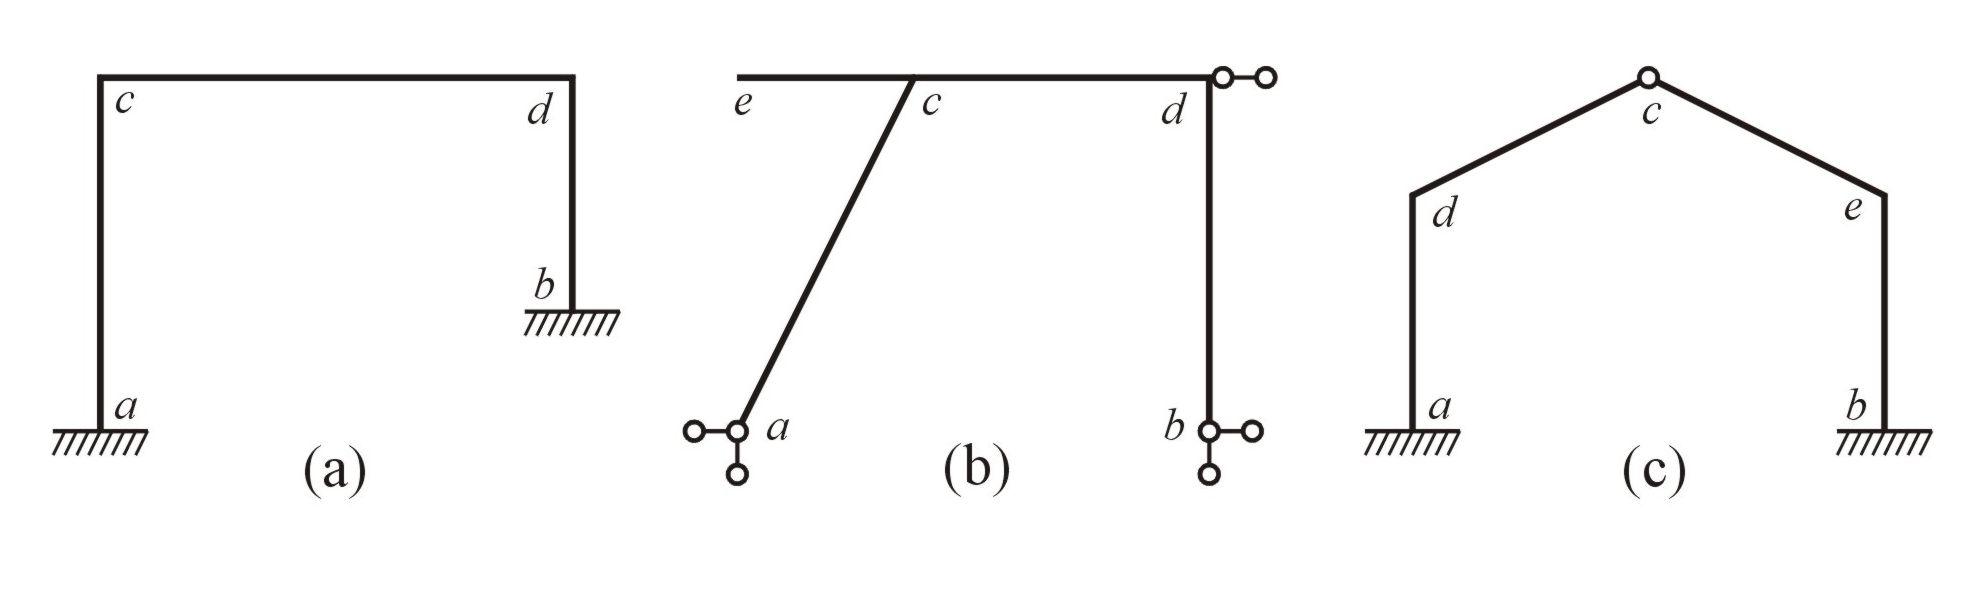 Druhy rovinných rámů Rámy : ) prvoúhlé () b) kosoúhlé (b), (c) c) rozvětvené (b) d) otevřené (), (b),